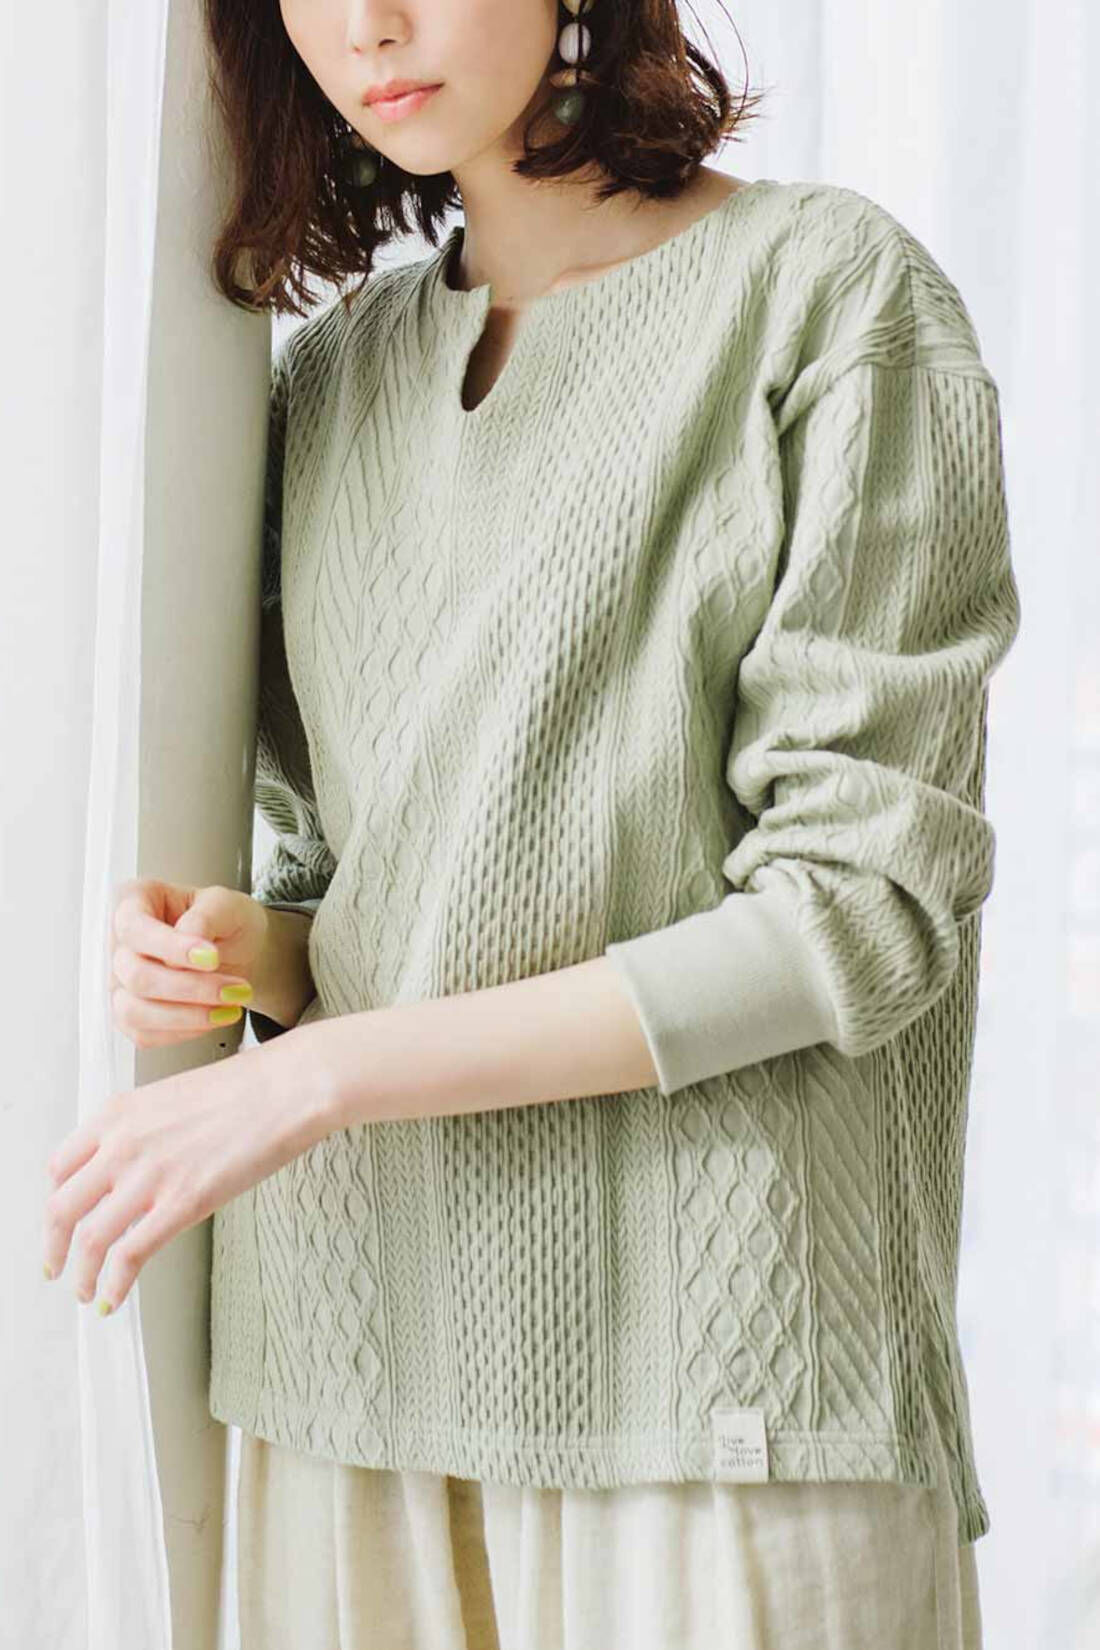 Real Stock|Live love cottonプロジェクト　リブ イン コンフォート　編み柄が素敵な袖口リブオーガニックコットントップス〈ホワイト〉|※着用イメージです。お届けするカラーとは異なります。